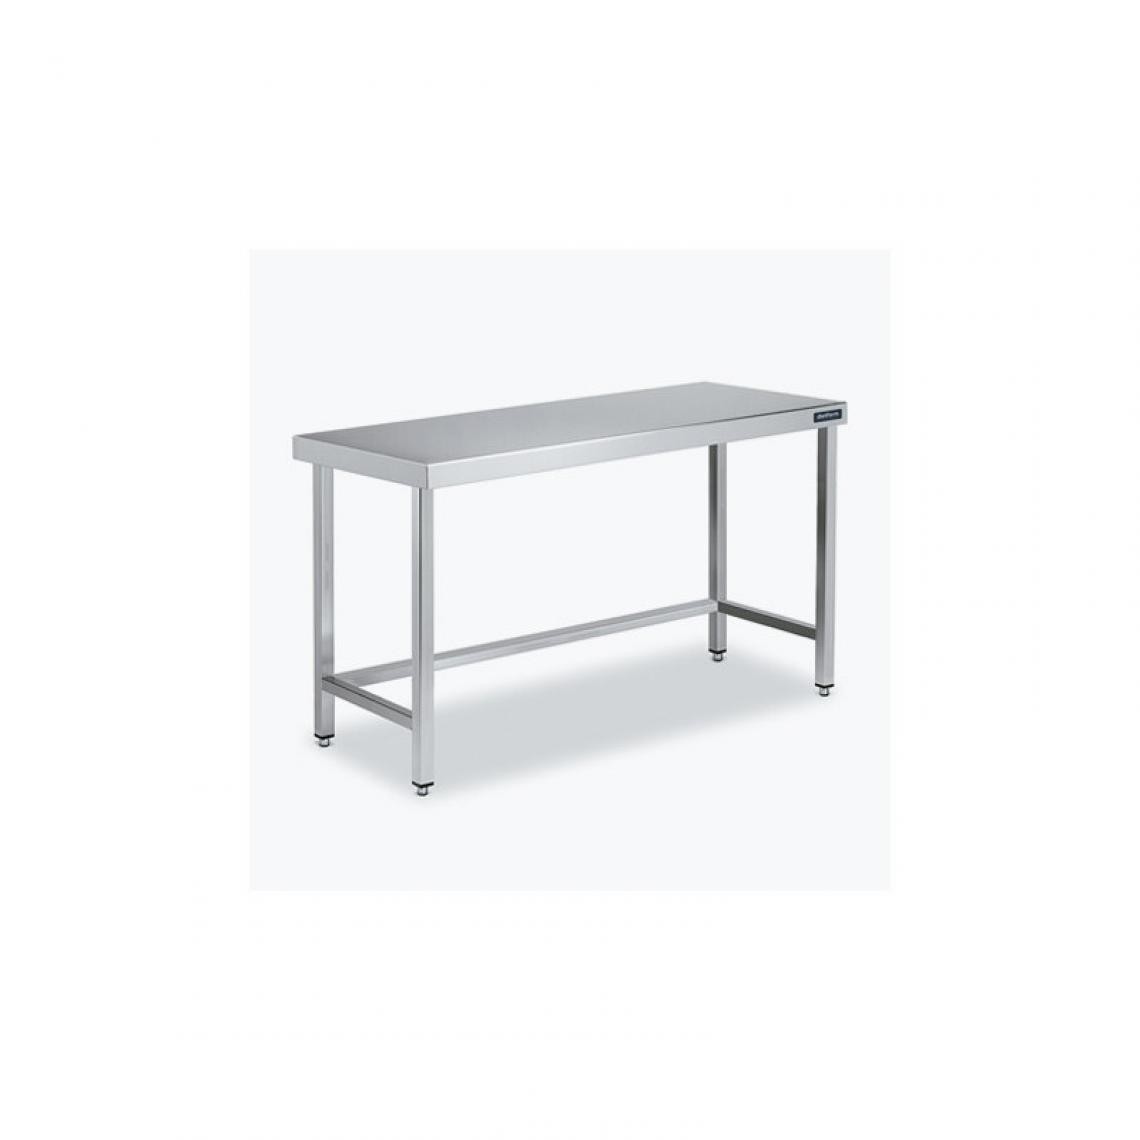 DISTFORM - Table Centrale 600x500 avec Renforts - Distform - Inox 18/101200x500x850mm - Tables à manger